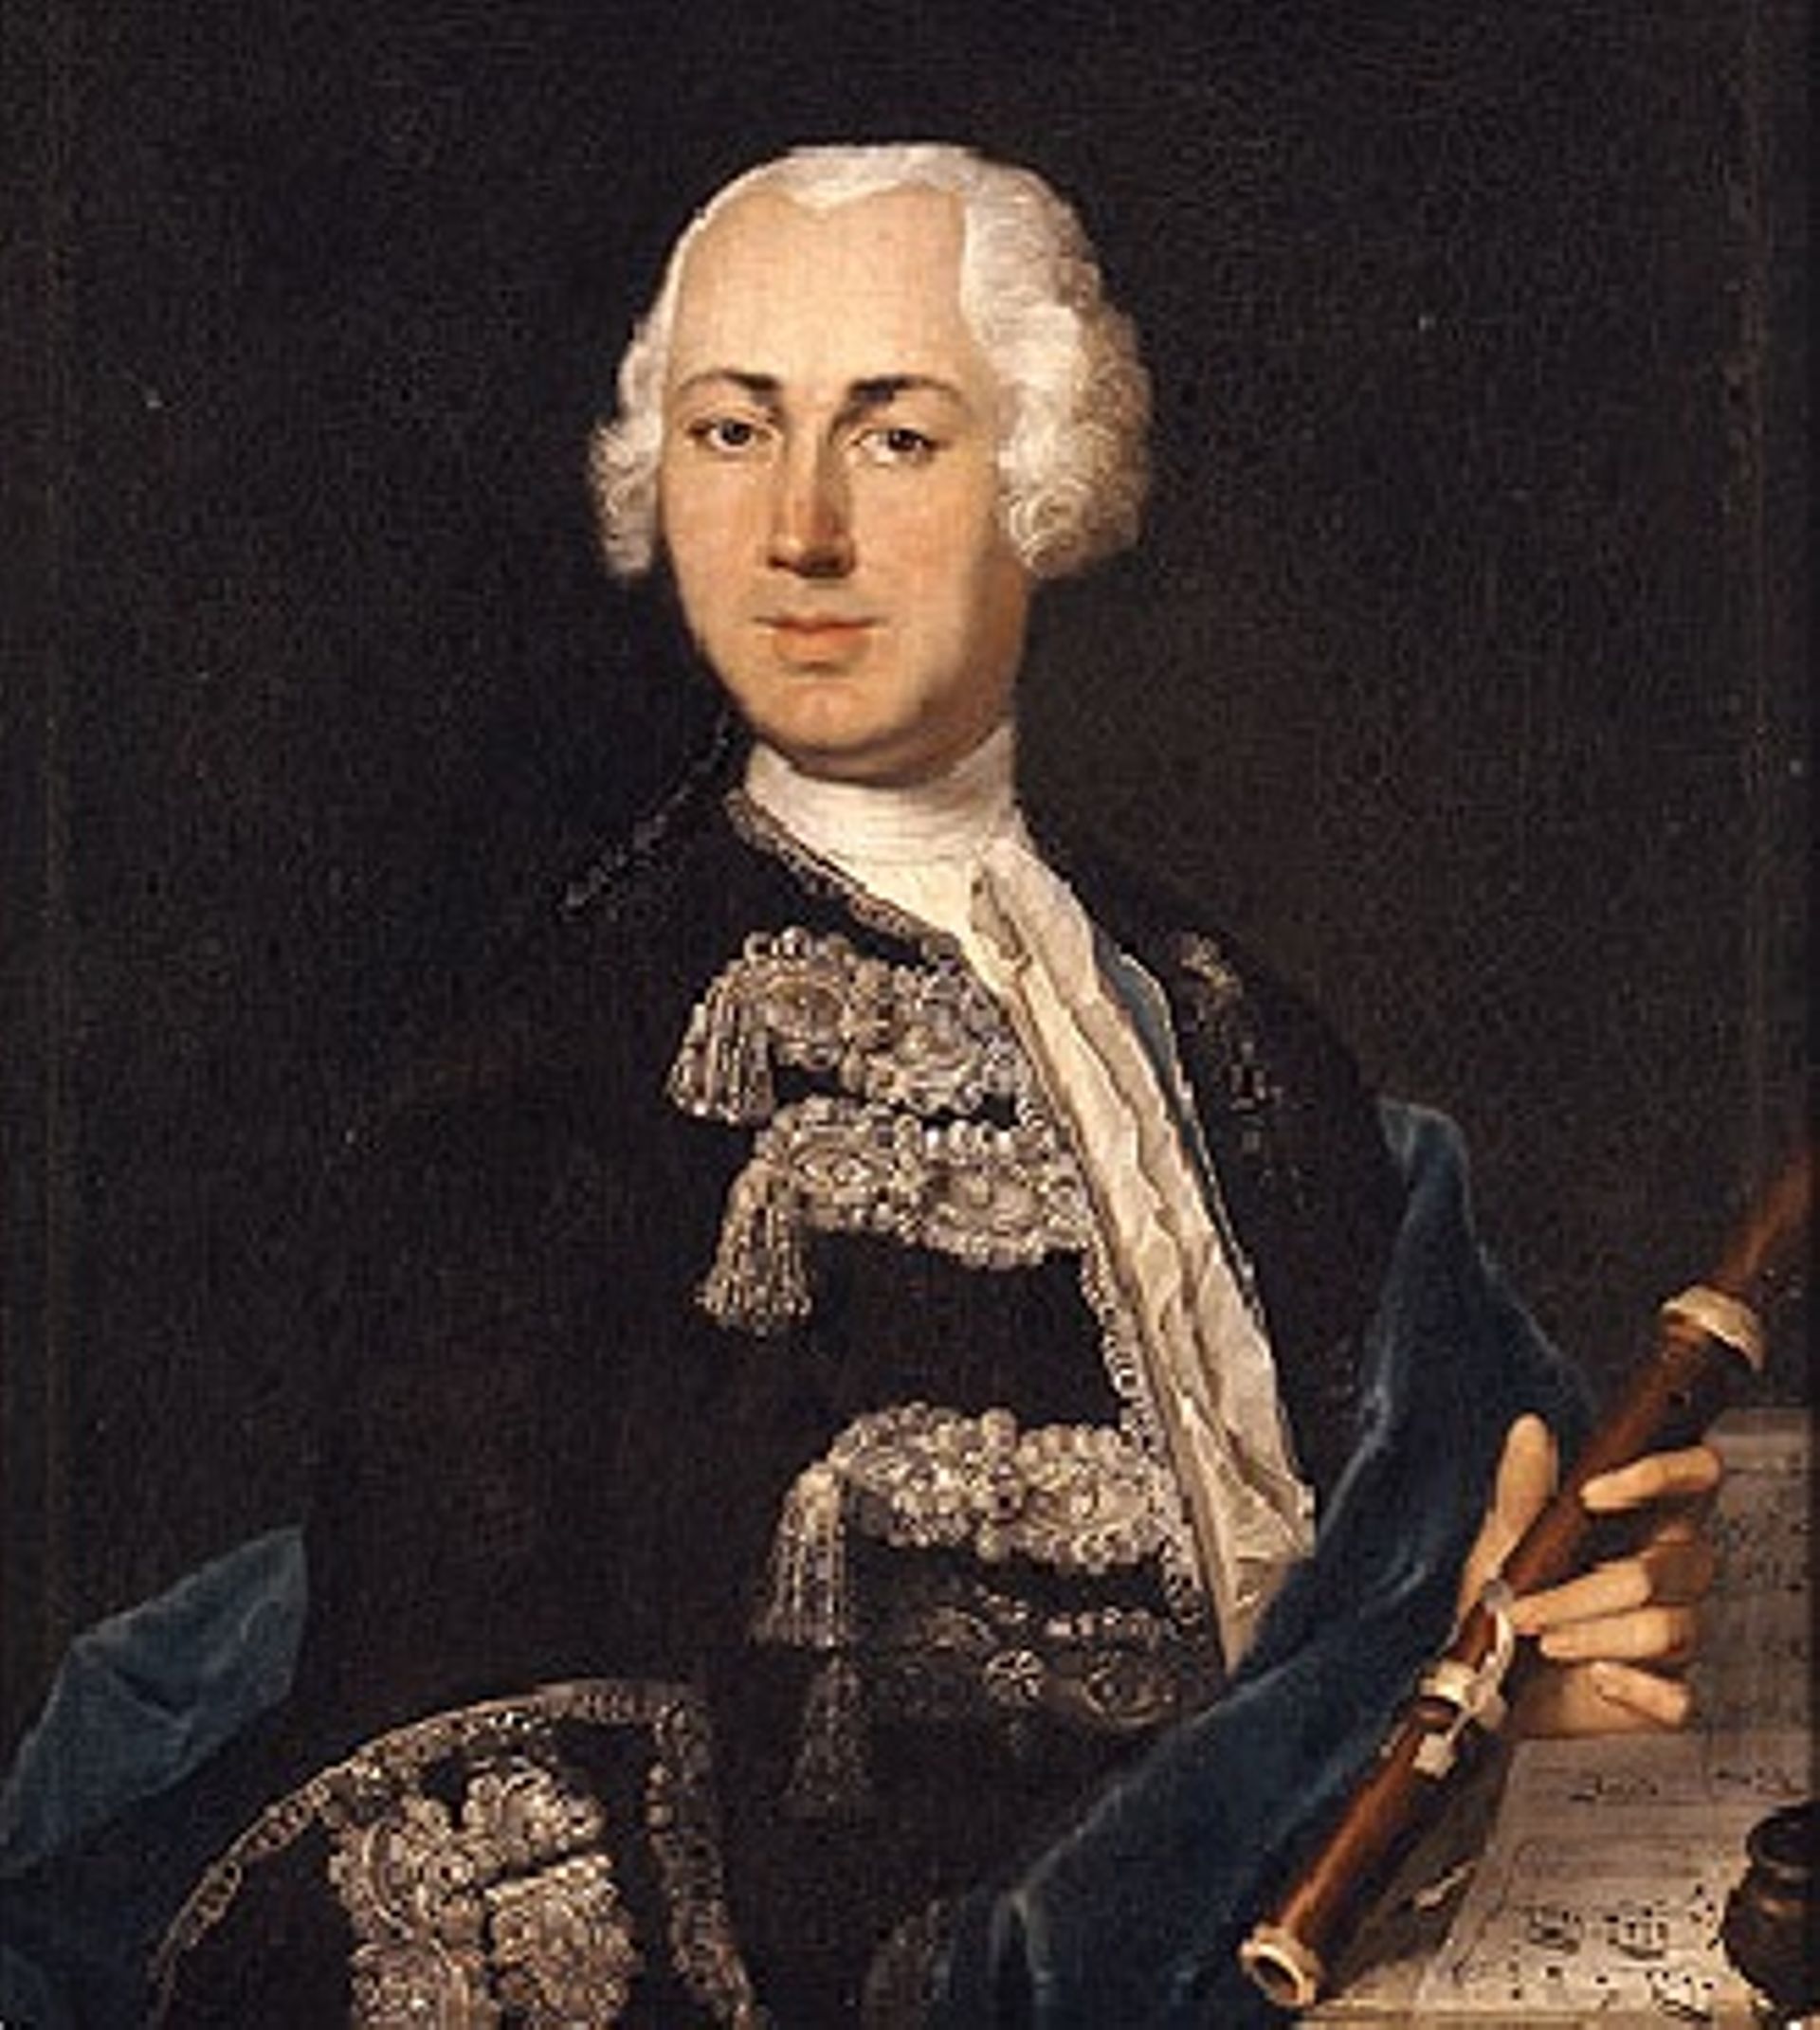 Johann Joachim Quantz - Portrait réalisé par Johann Friedrich Gerhard, 1735